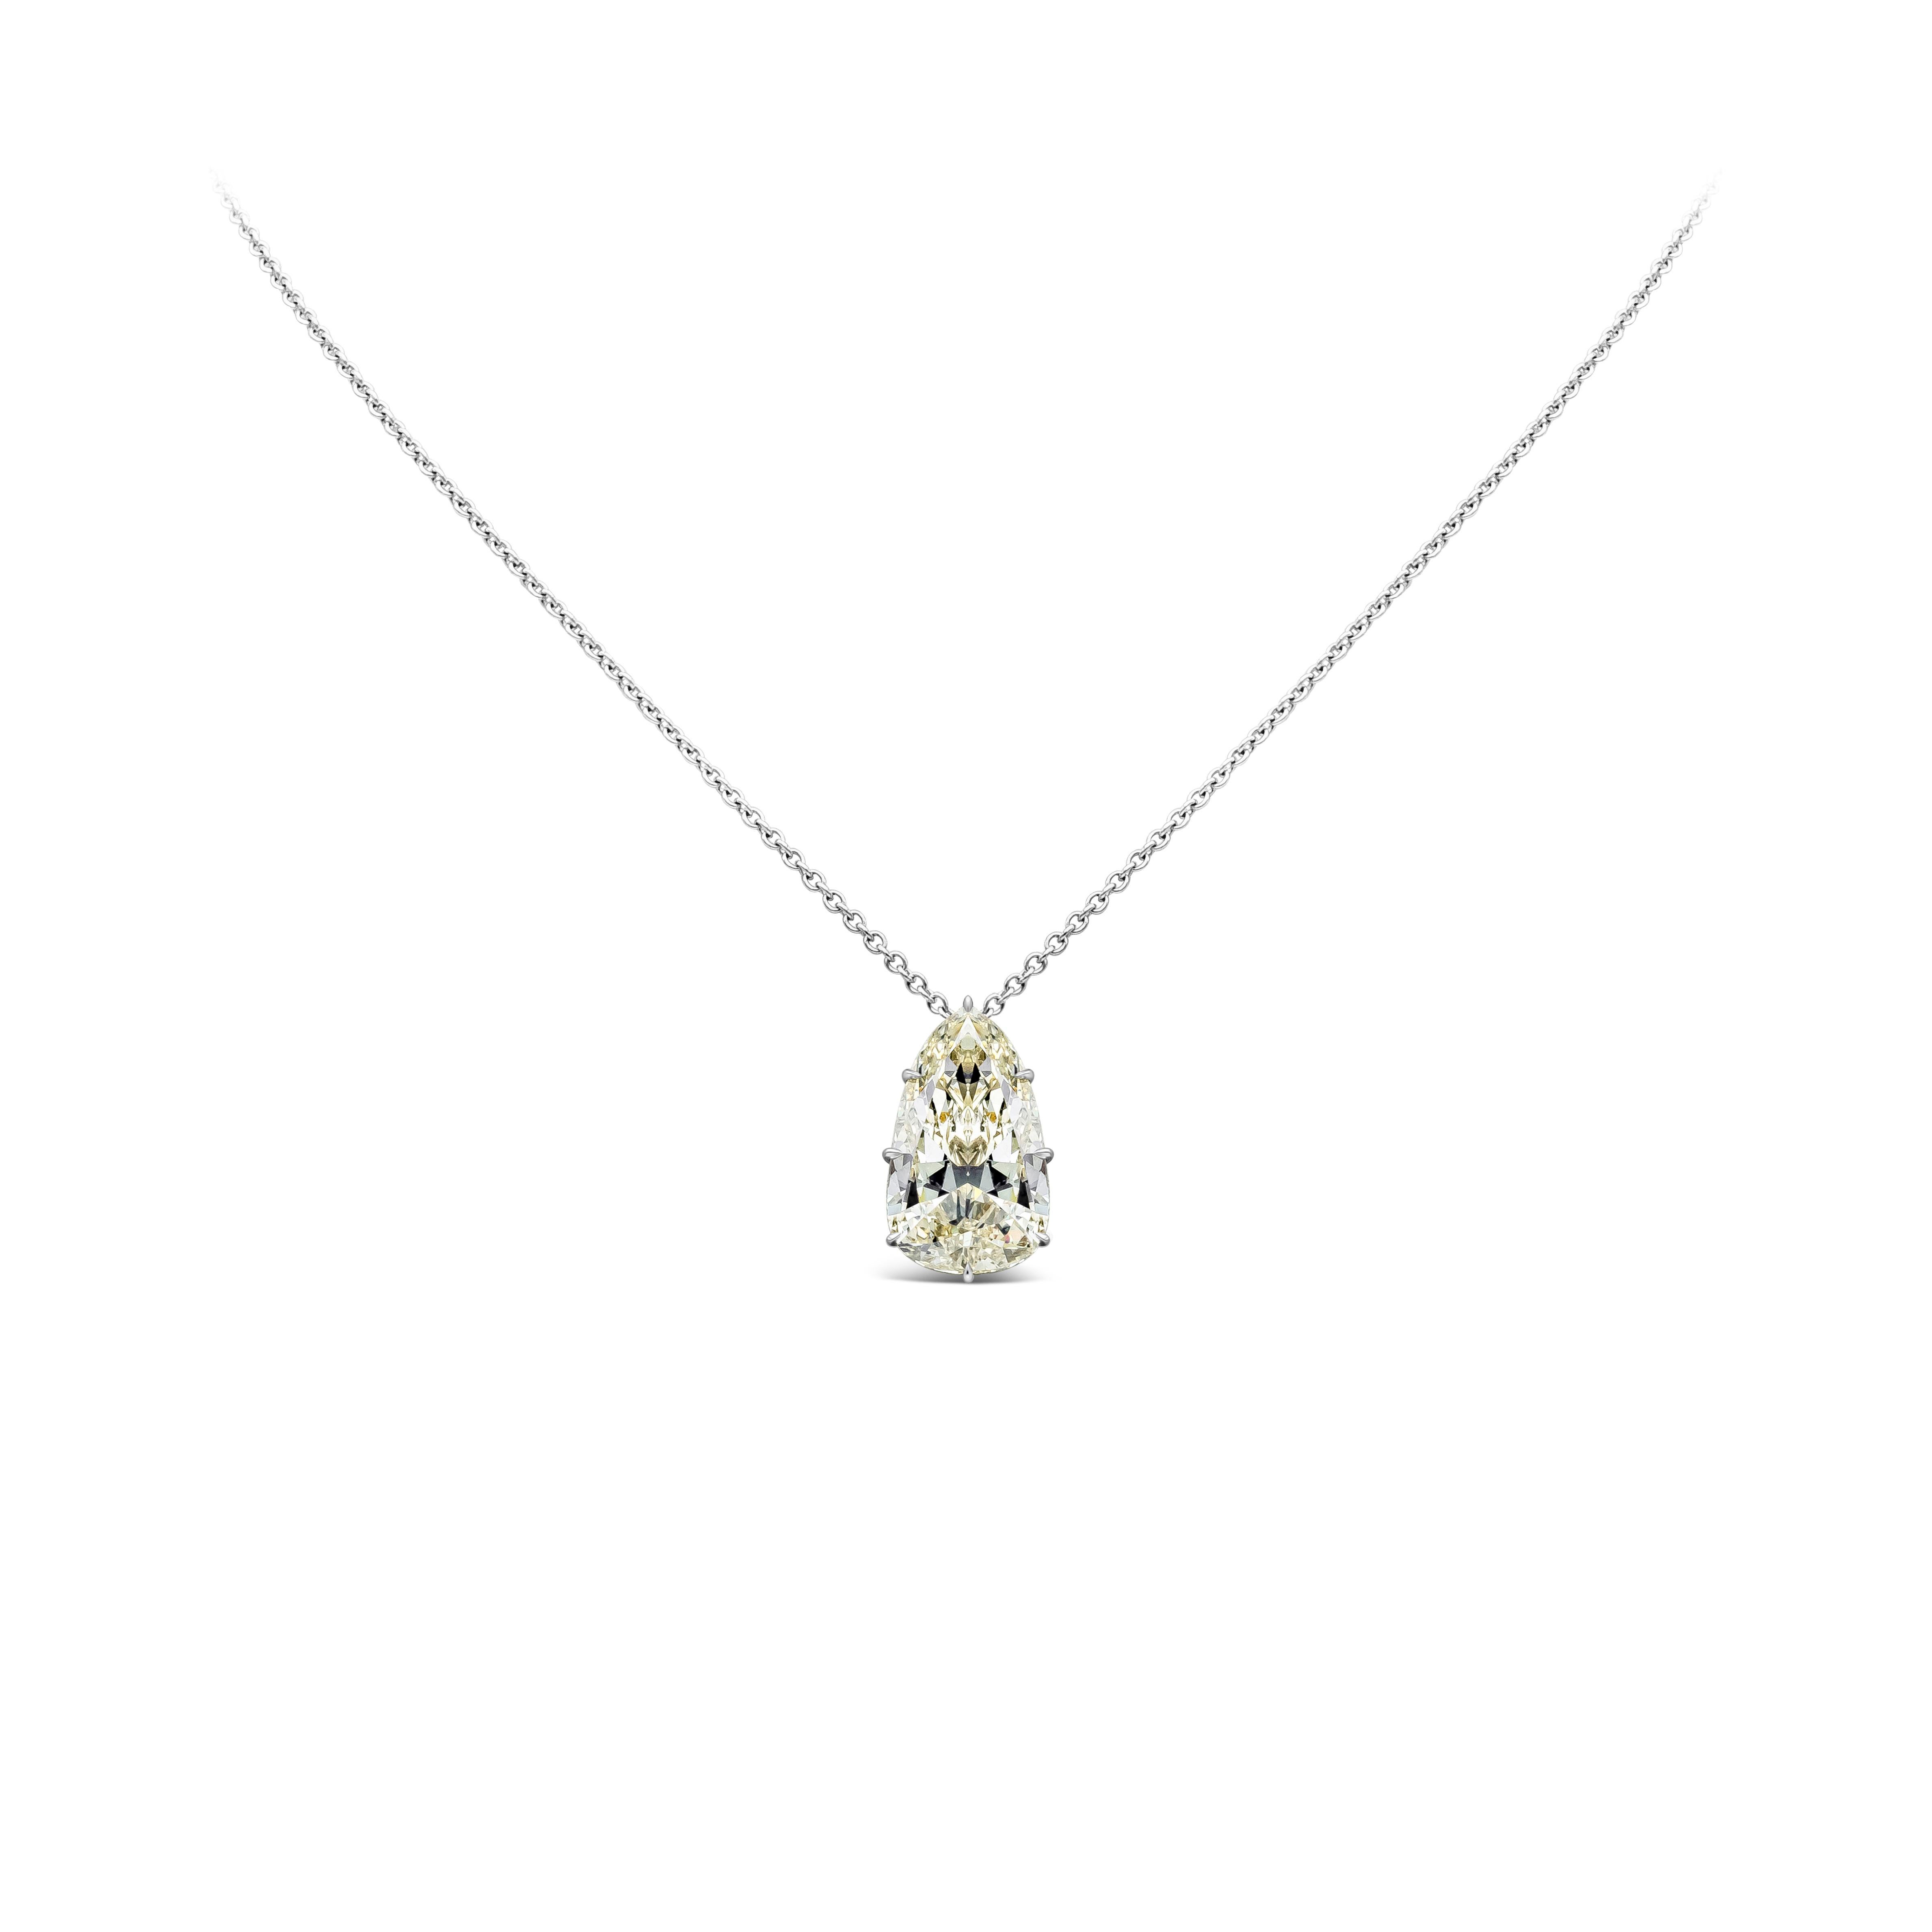 Collier pendentif solitaire mettant en valeur un diamant poire de 9,10 carats, de couleur K et de pureté VVS2. Serti sur 8 pointes, en platine. 18 pouces de longueur